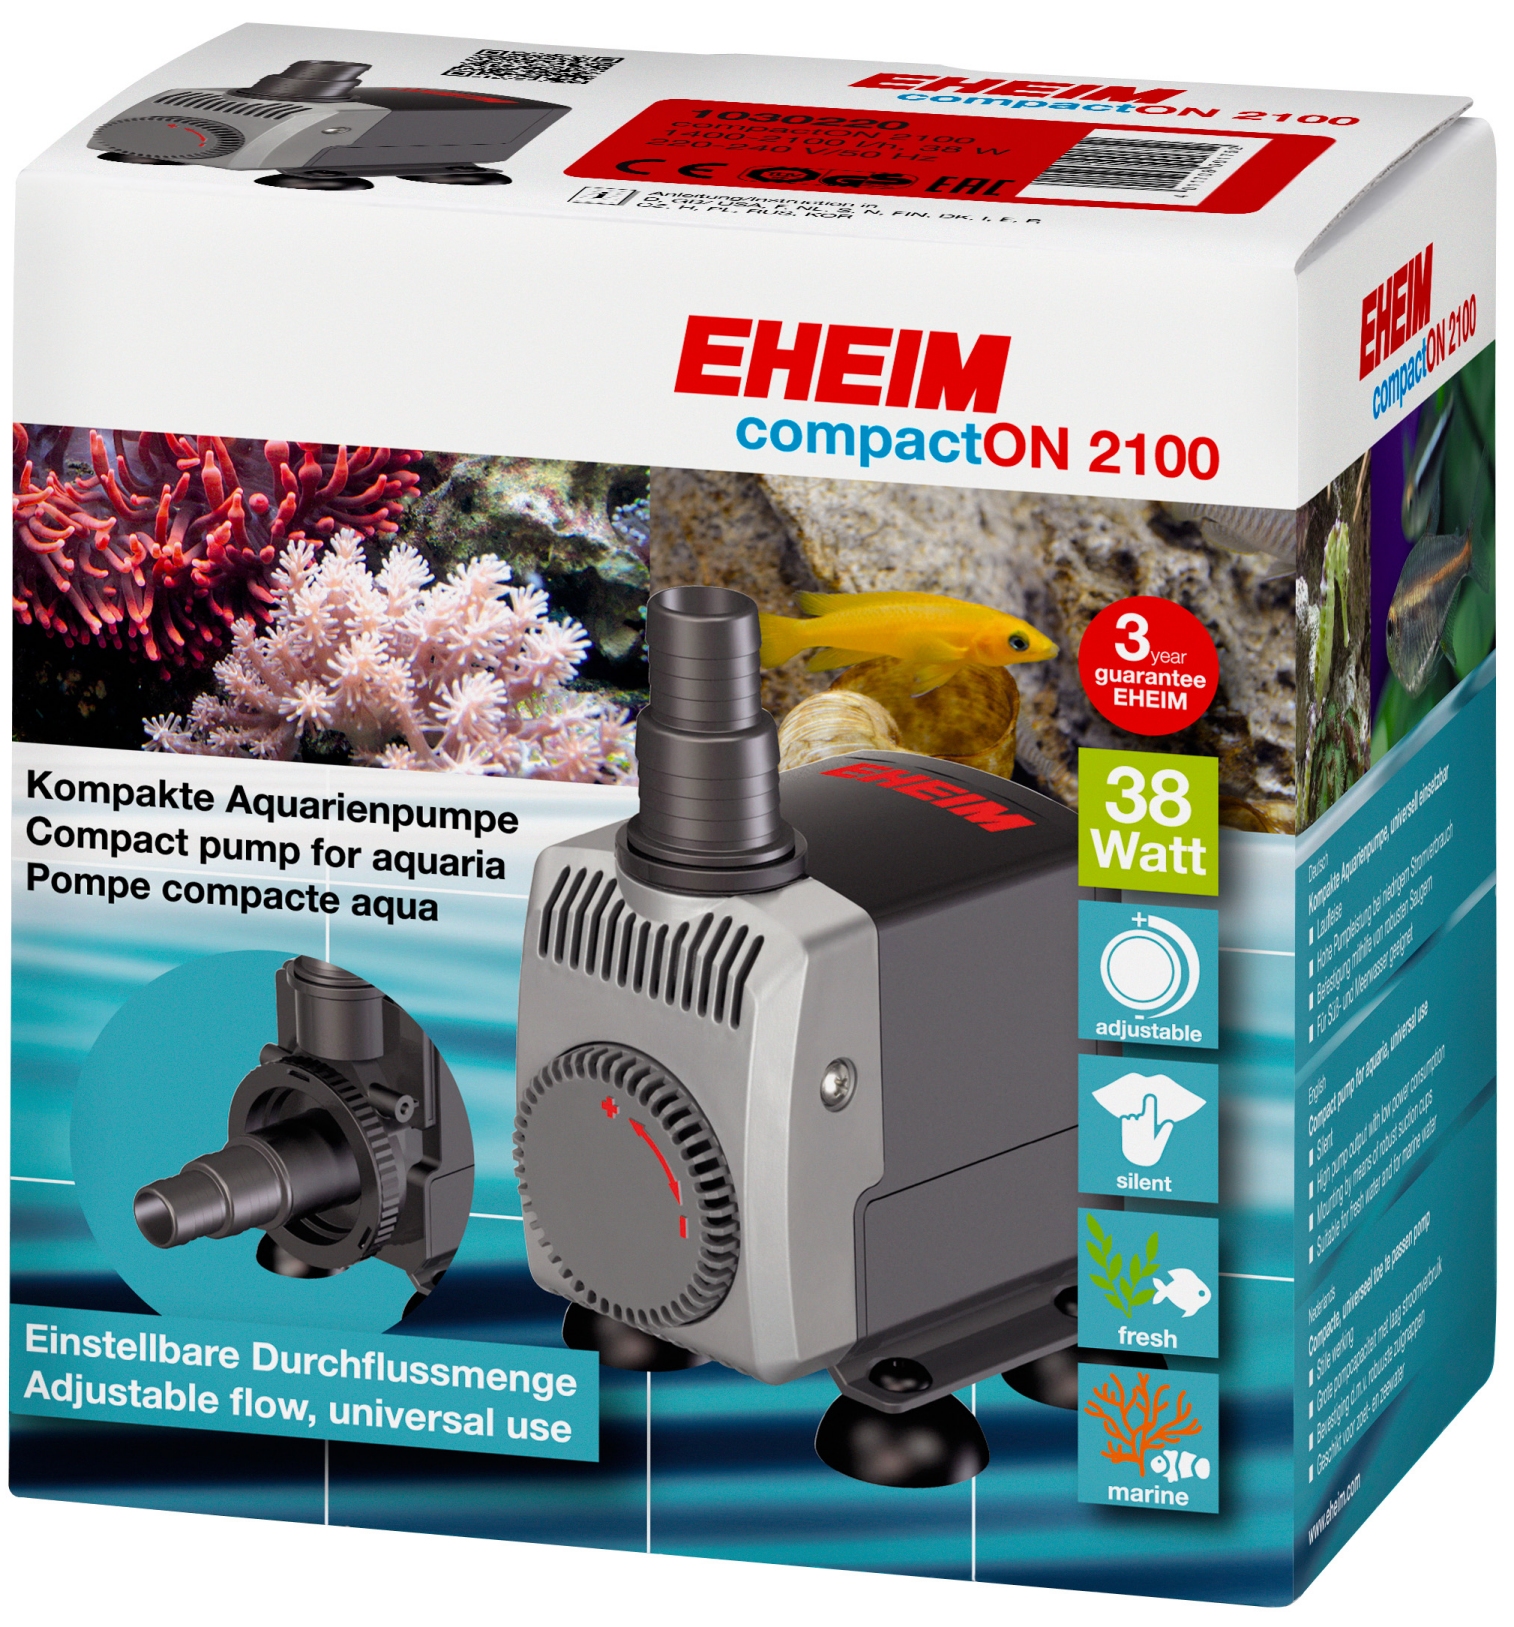 EHEIM compactON 1000 Aquarium Pumpe